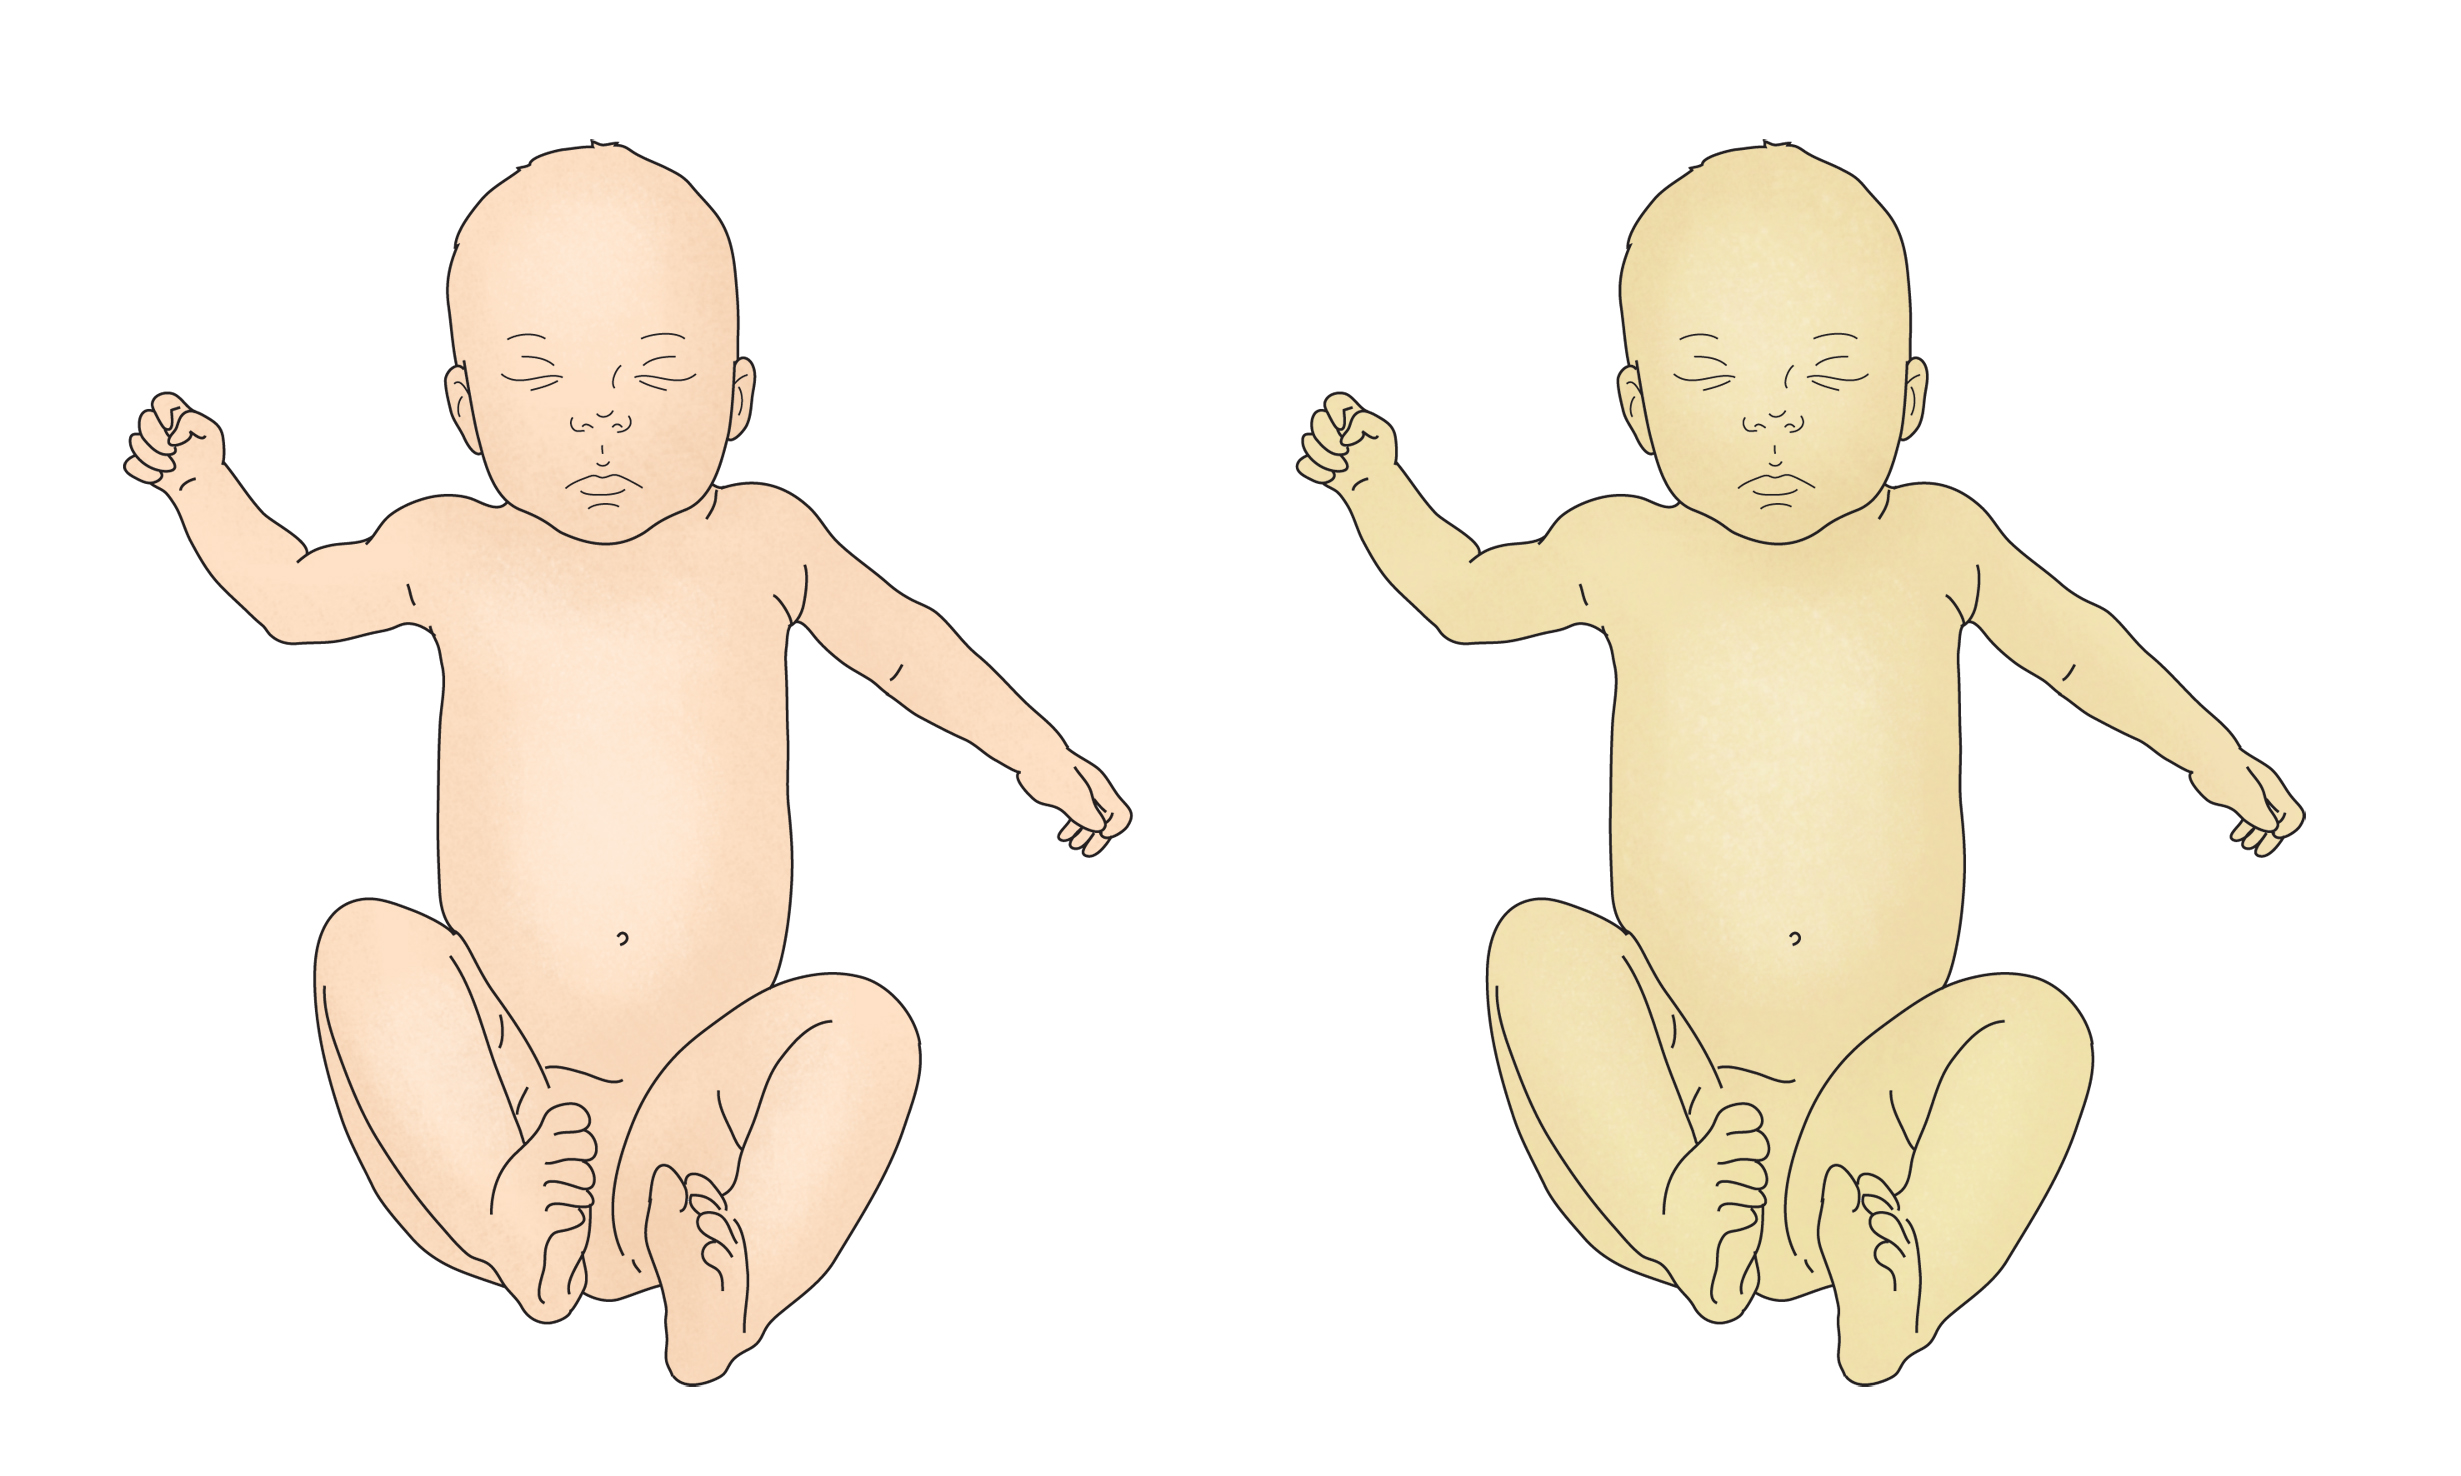 황달이 있는 신생아와 없는 신생아를 비교한 그림